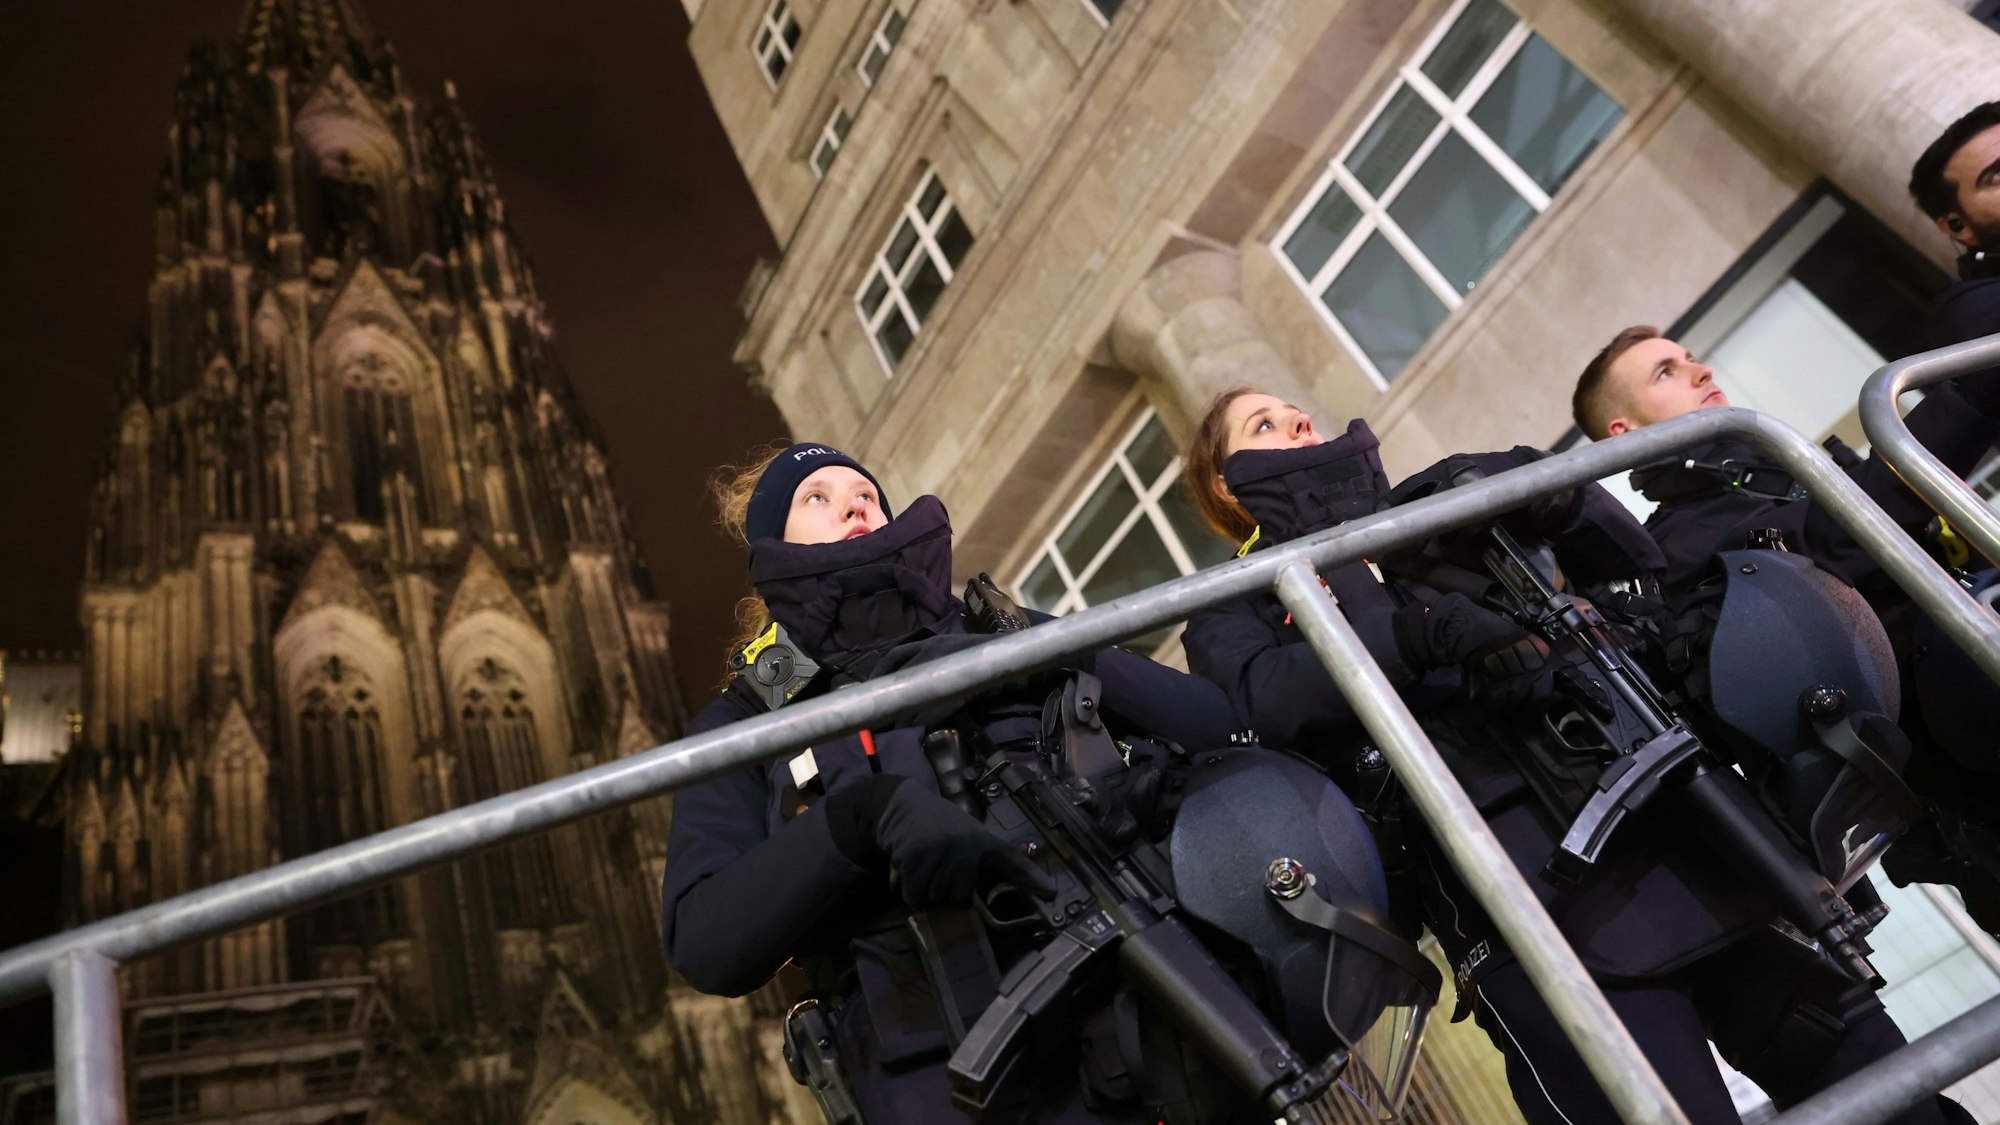 Einsatzkräfte der Polizei patrouillierten am Kölner Dom mit Maschinenpistolen.